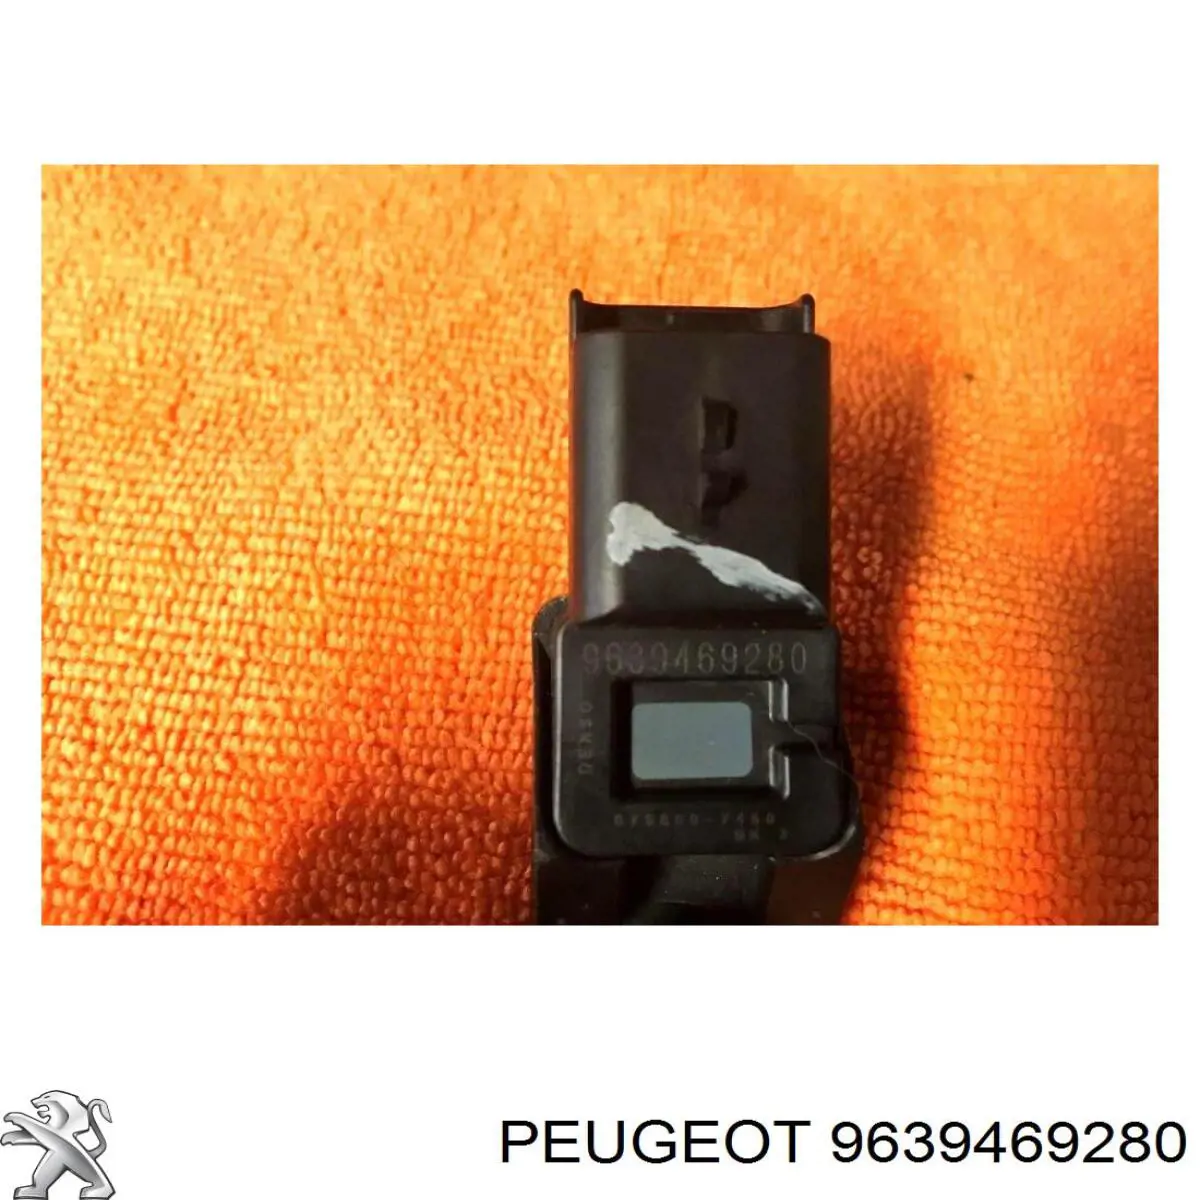 9639469280 Peugeot/Citroen датчик давления во впускном коллекторе, map